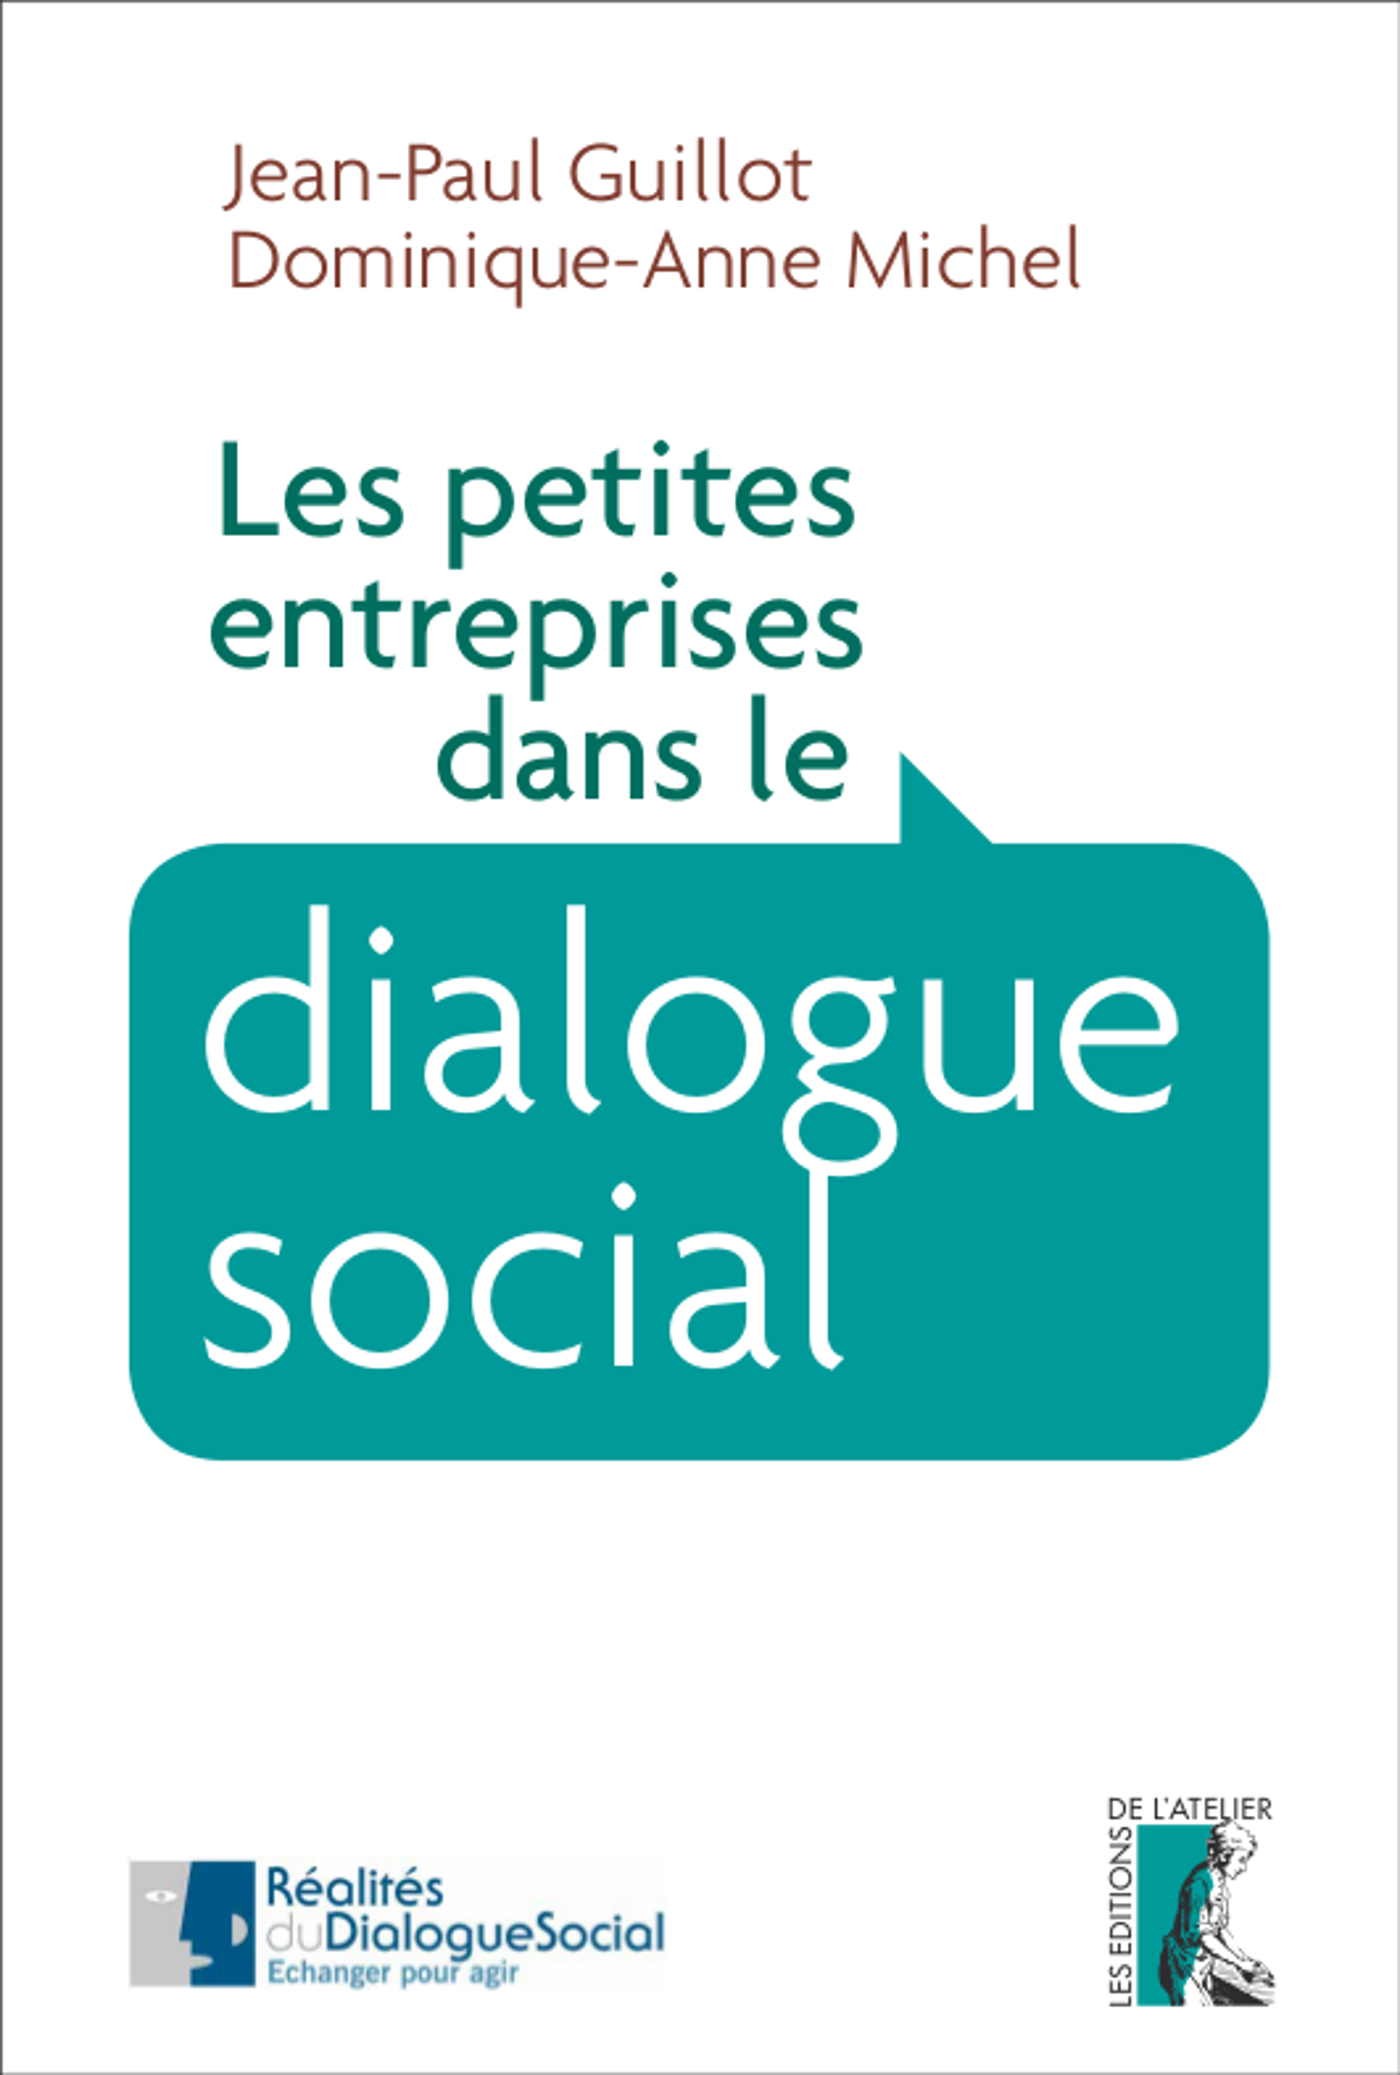 Les petites entreprises dans le dialogue social - Jean-Paul Guillot, Dominique-Anne Michel - Éditions de l'Atelier